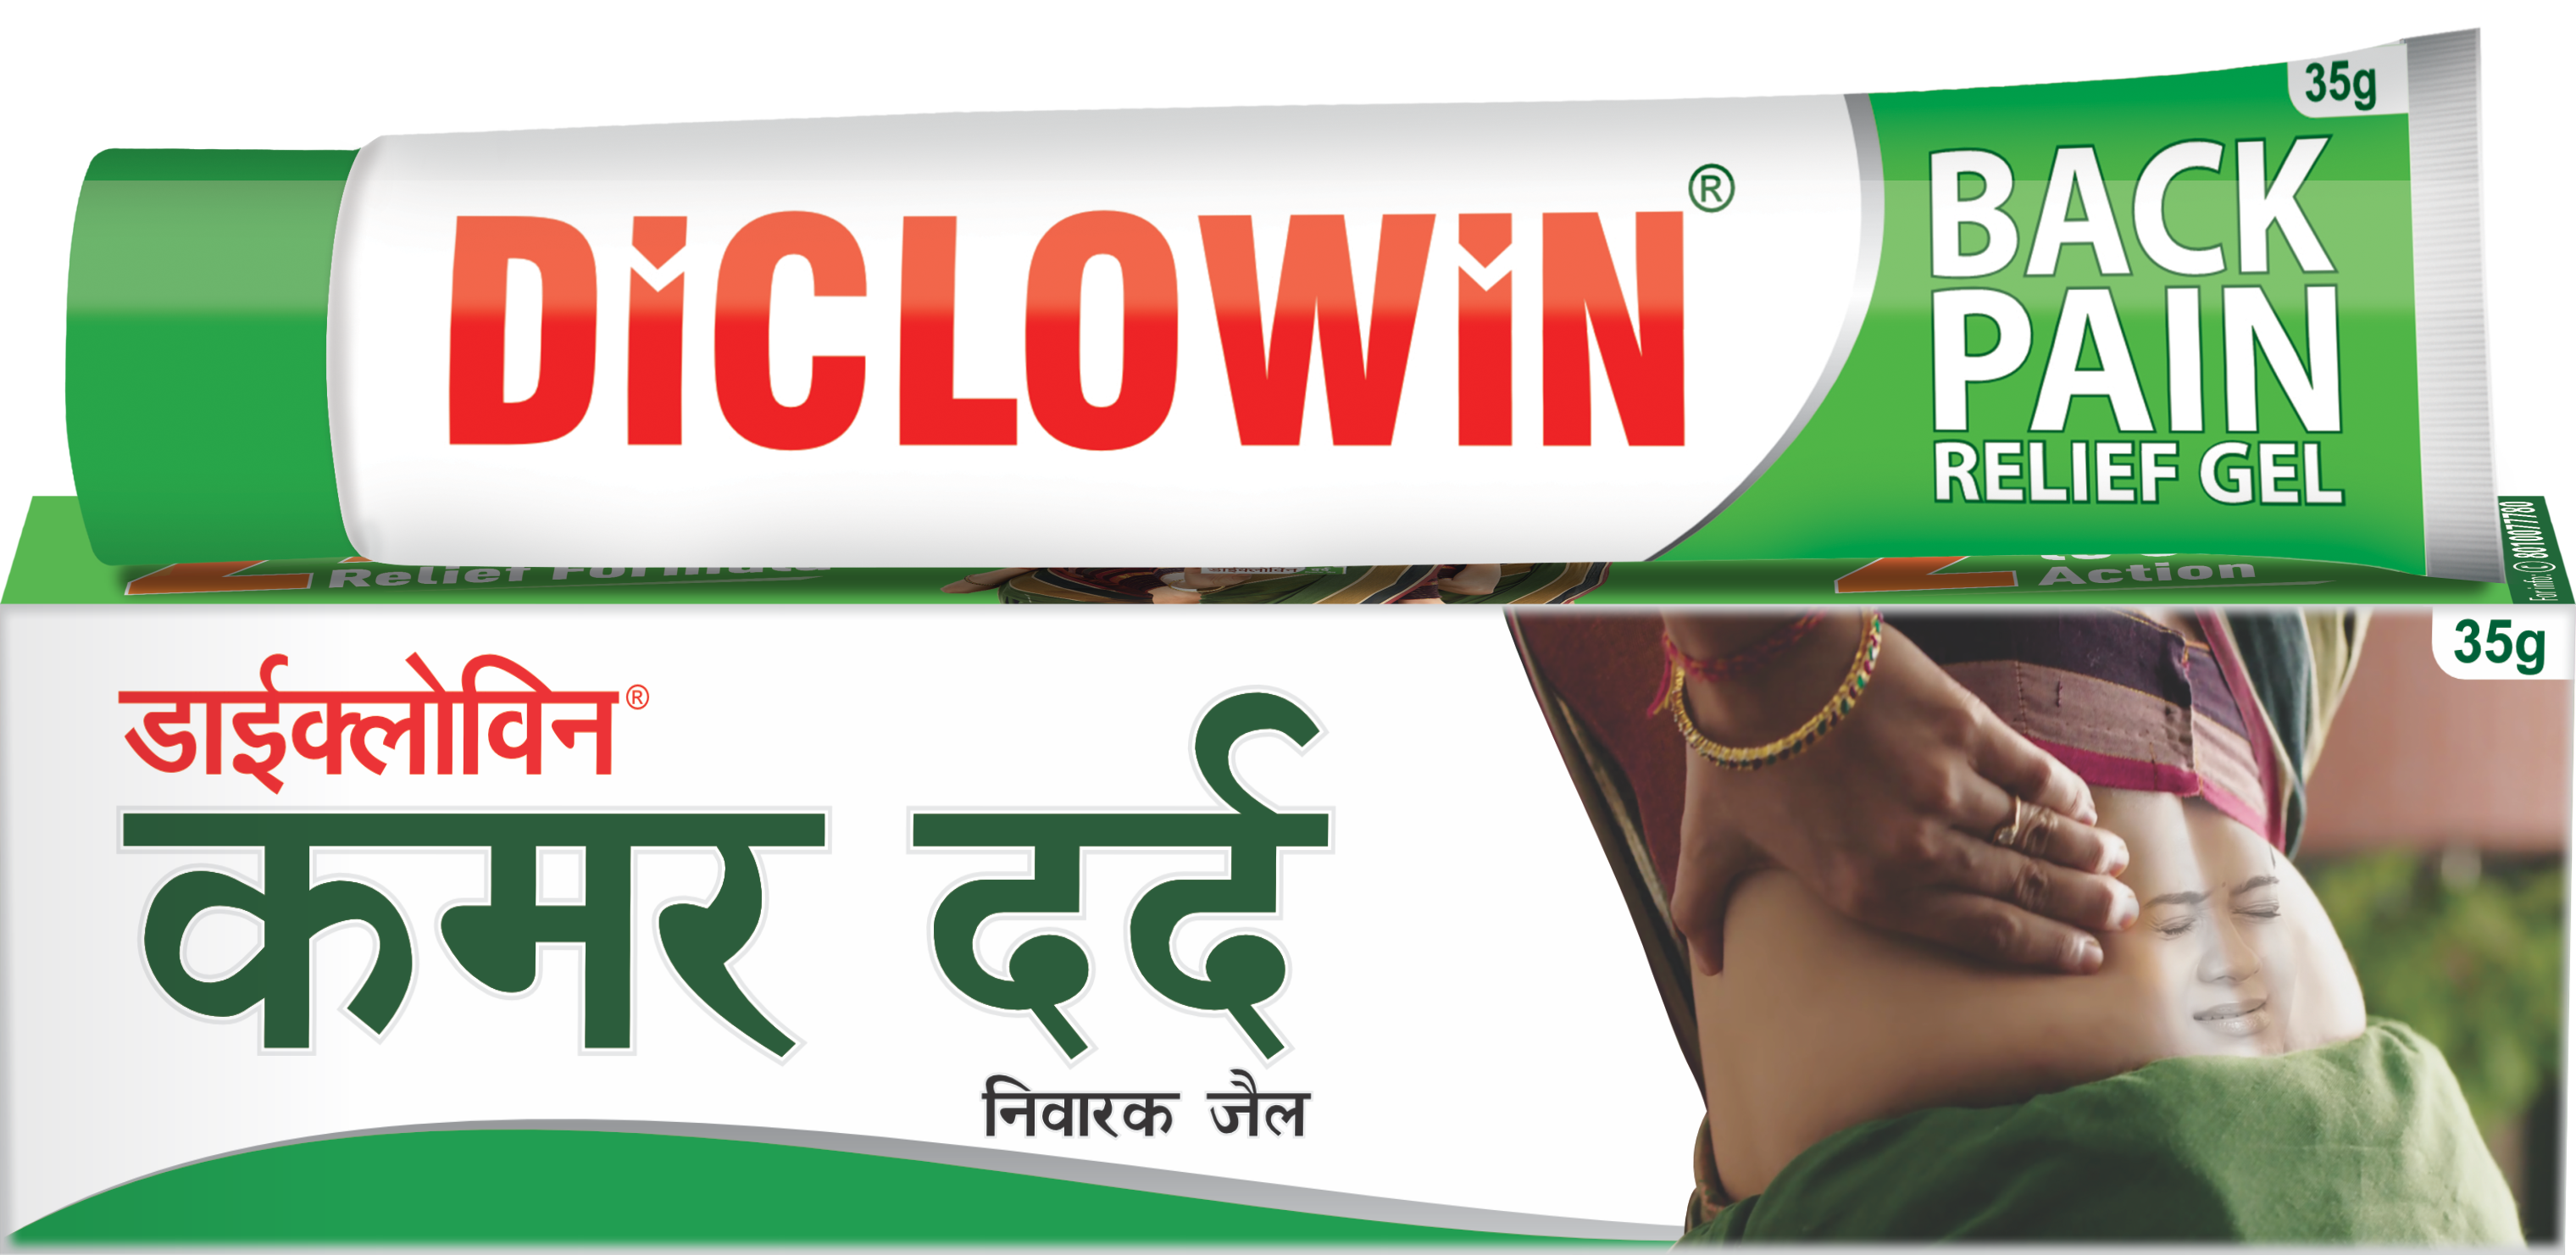 Diclowin-Pain-Relief-Gel